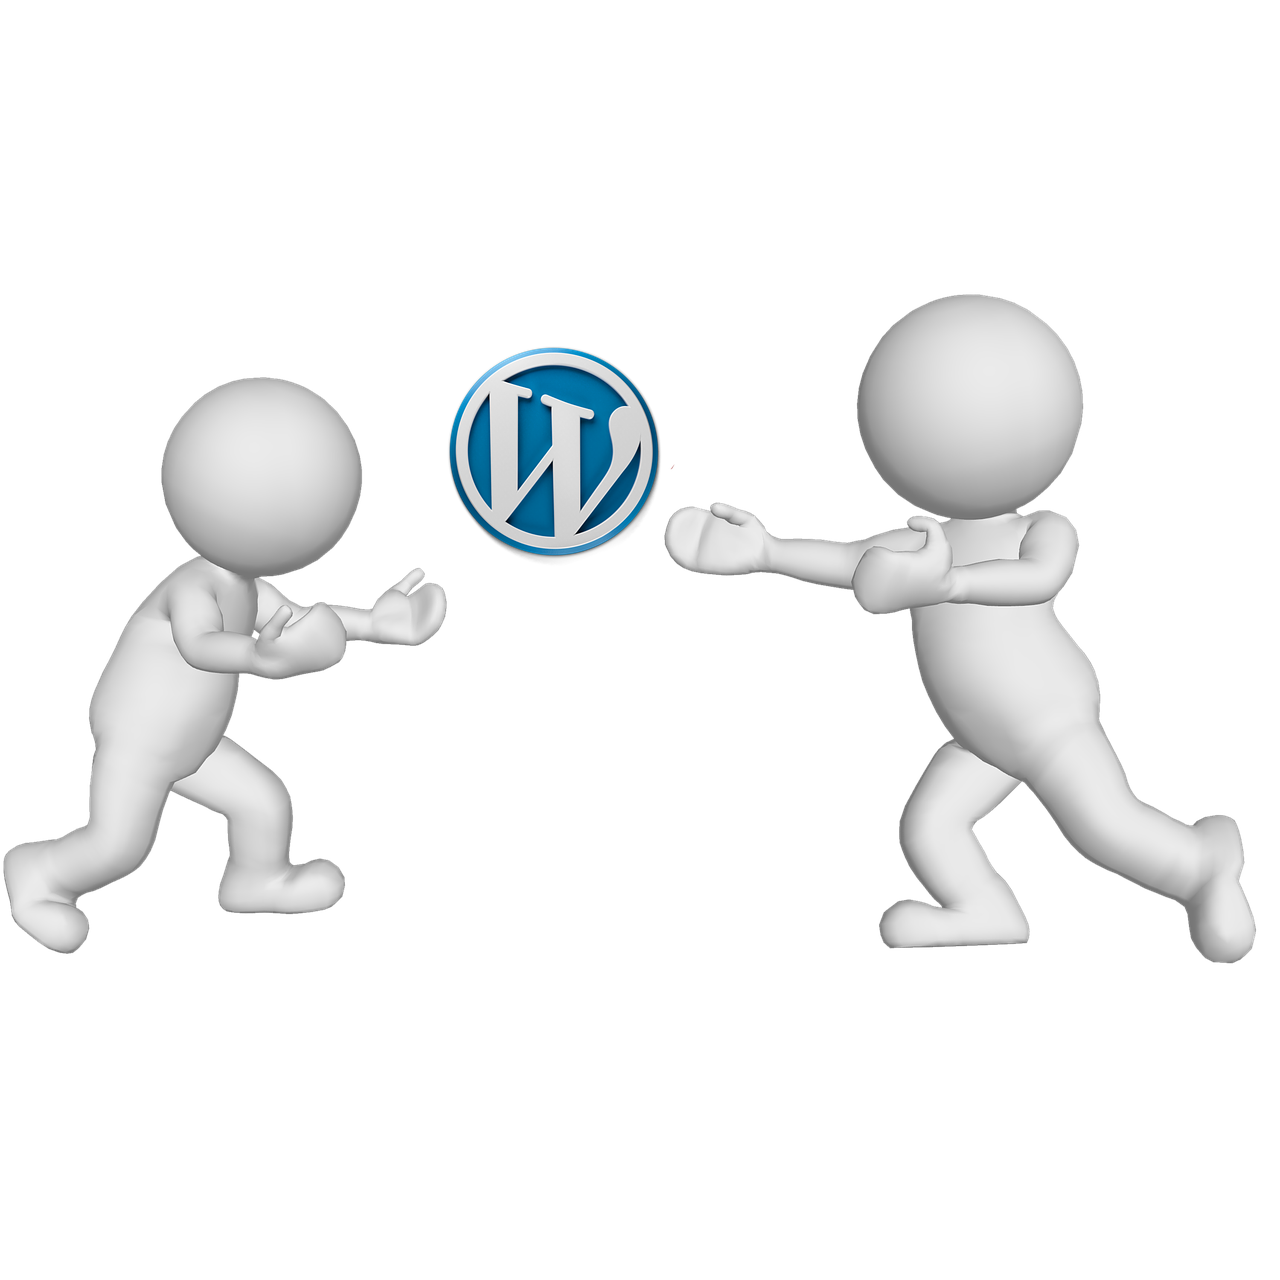 Wordpress, Interneto Svetainė, Žodis, Paspauskite, Vyrai, Personažai, Informacija, Internetas, Verslas, Internetas